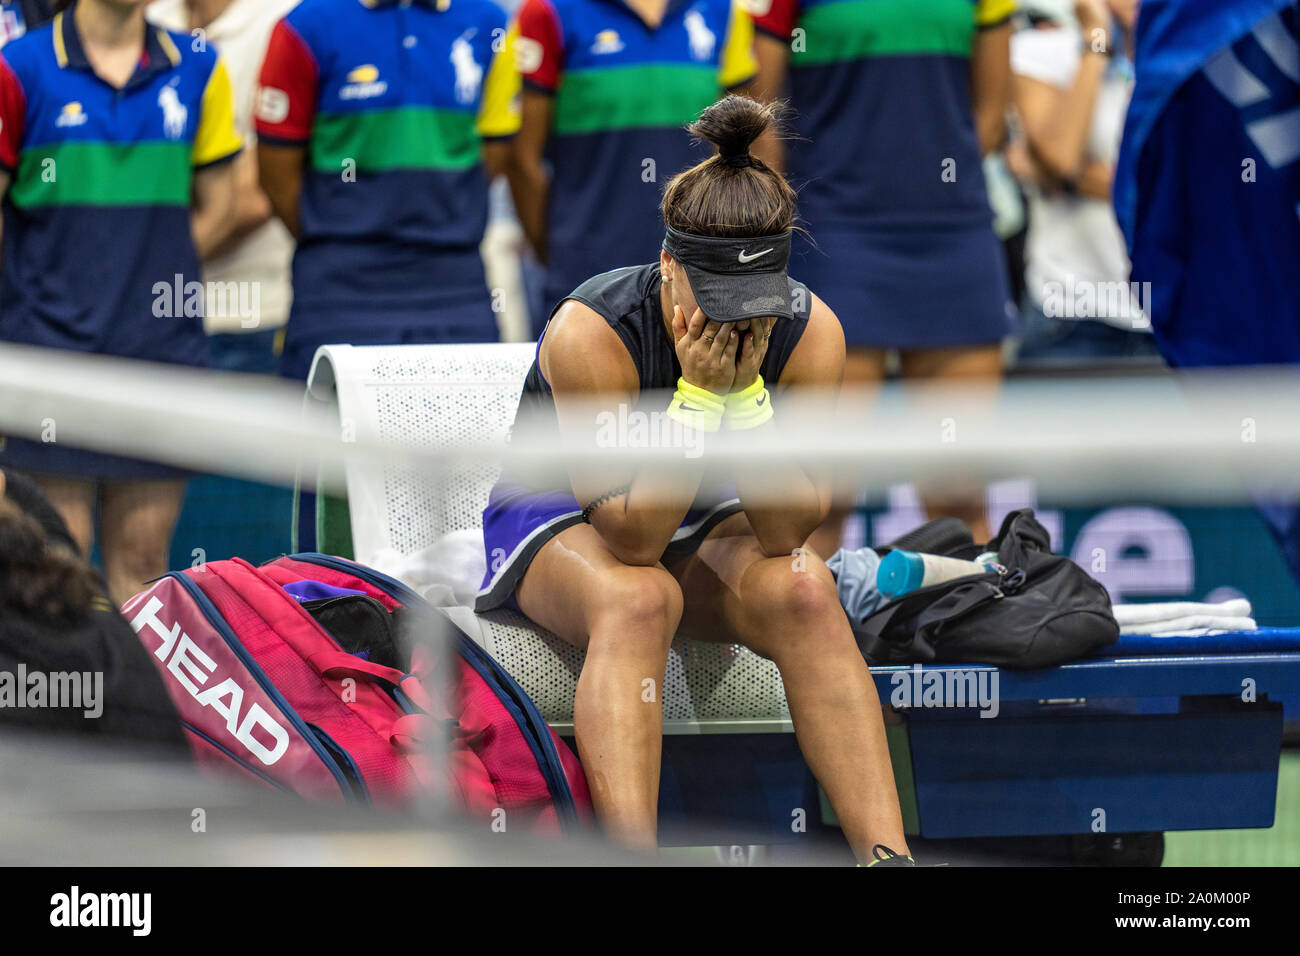 Bianca Andreescu de Canadá de la reacción emocional tras derrotar a Serena Williams de los EE.UU. y ganar los singles femeninos final en el US Open 2019 Foto de stock